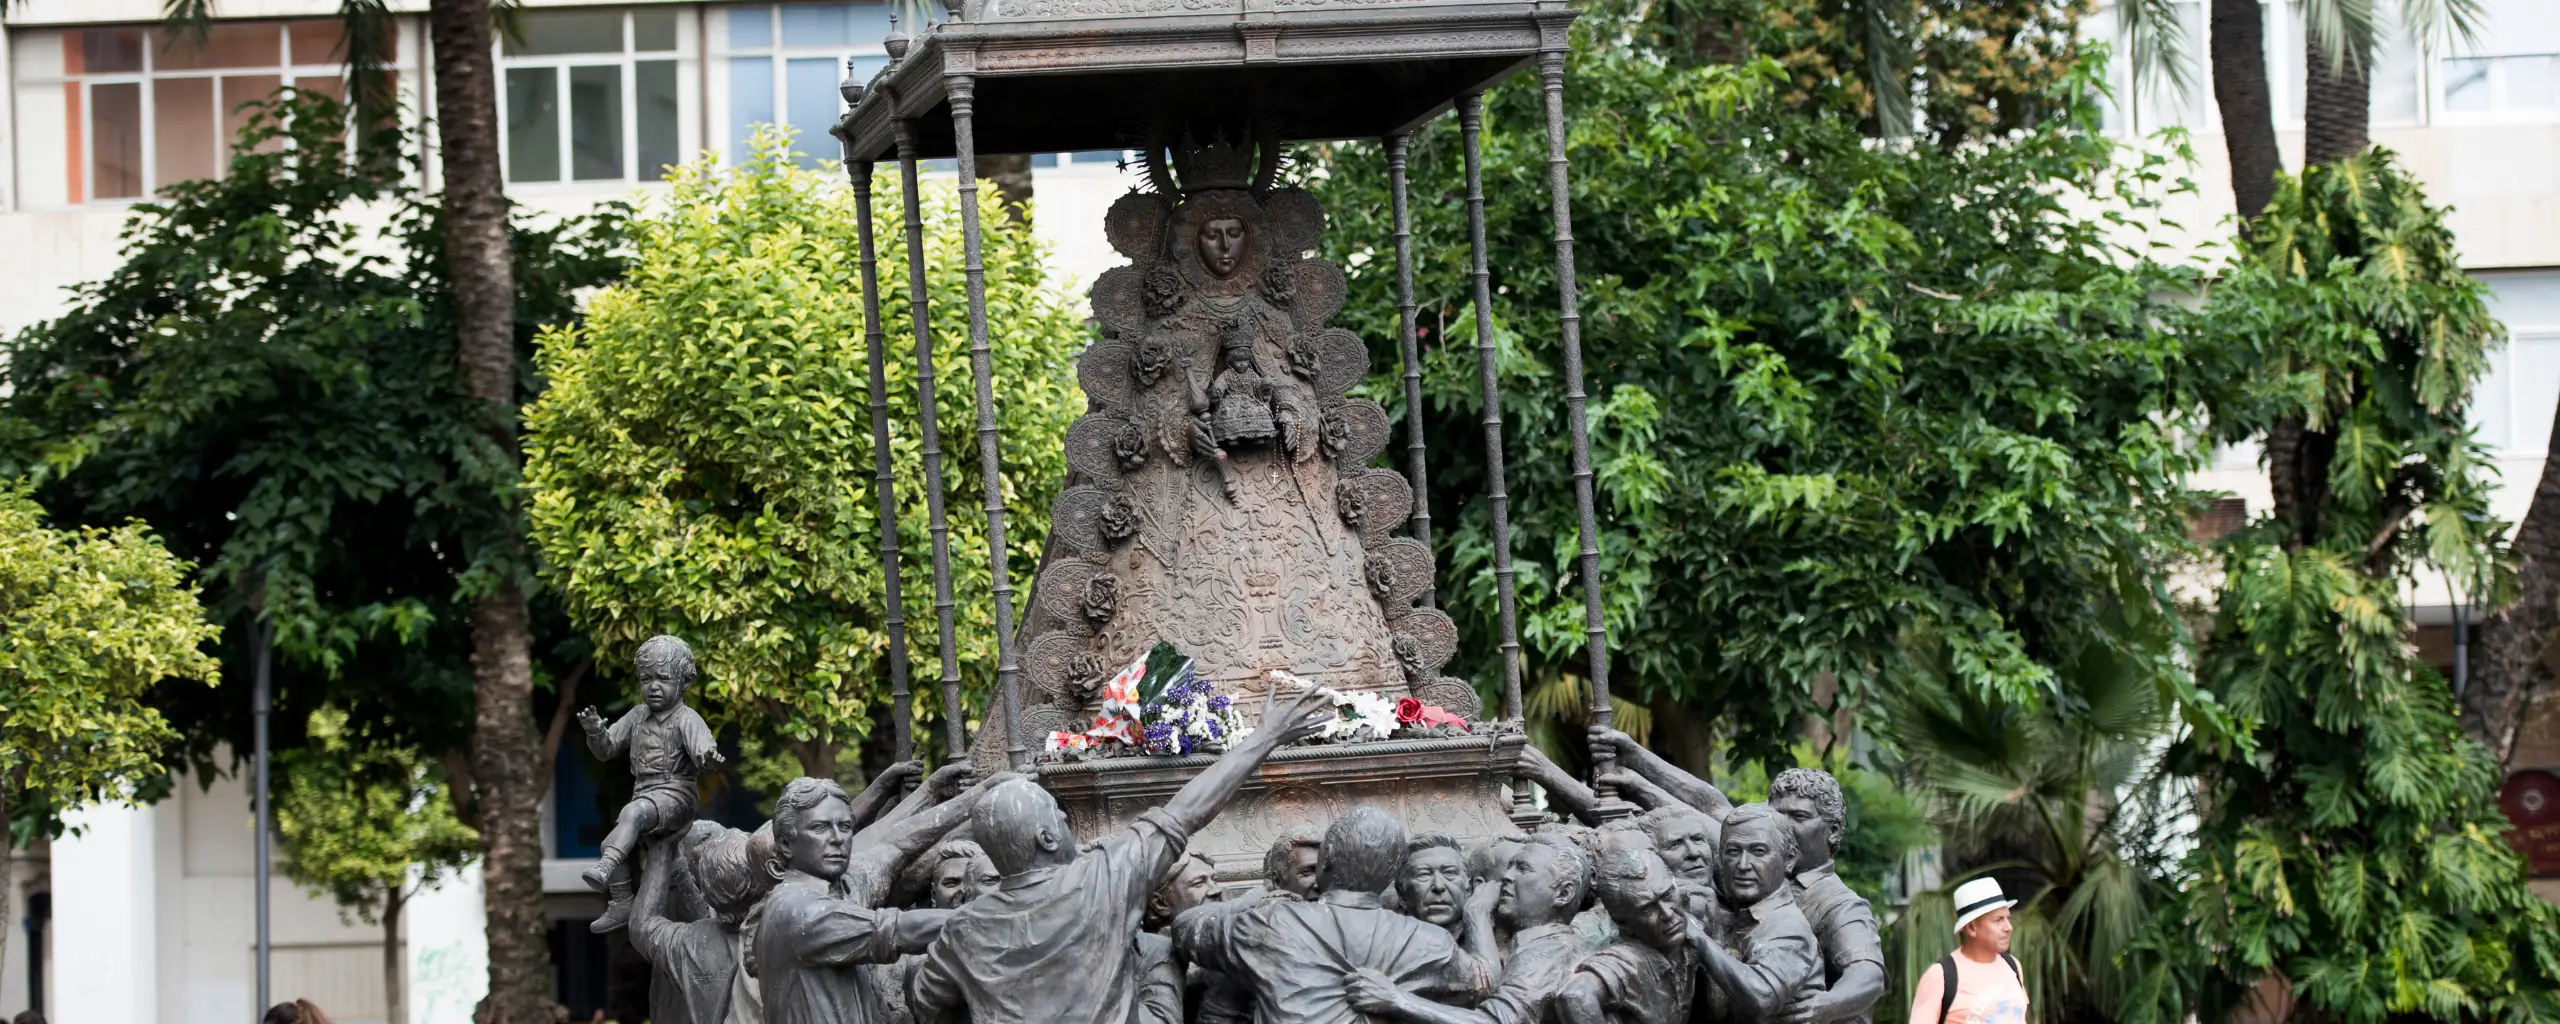 Monumento a la Virgen del Rocío